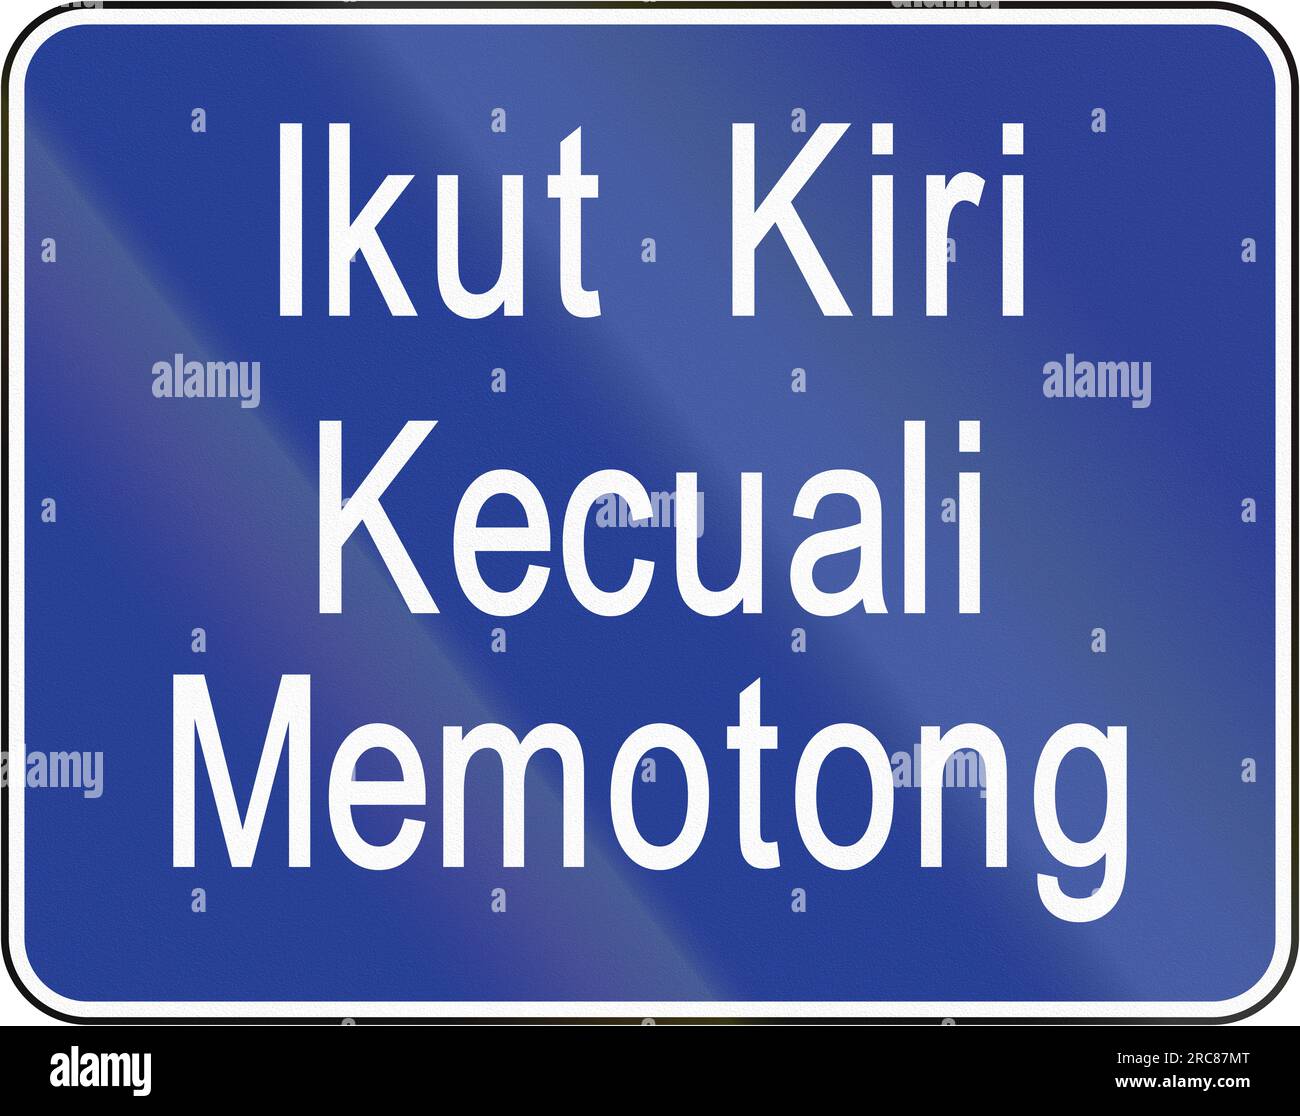 Indicazioni stradali per Brunei: Ikut kiri kecuali memotong/tenere la sinistra a meno che non si superi Foto Stock